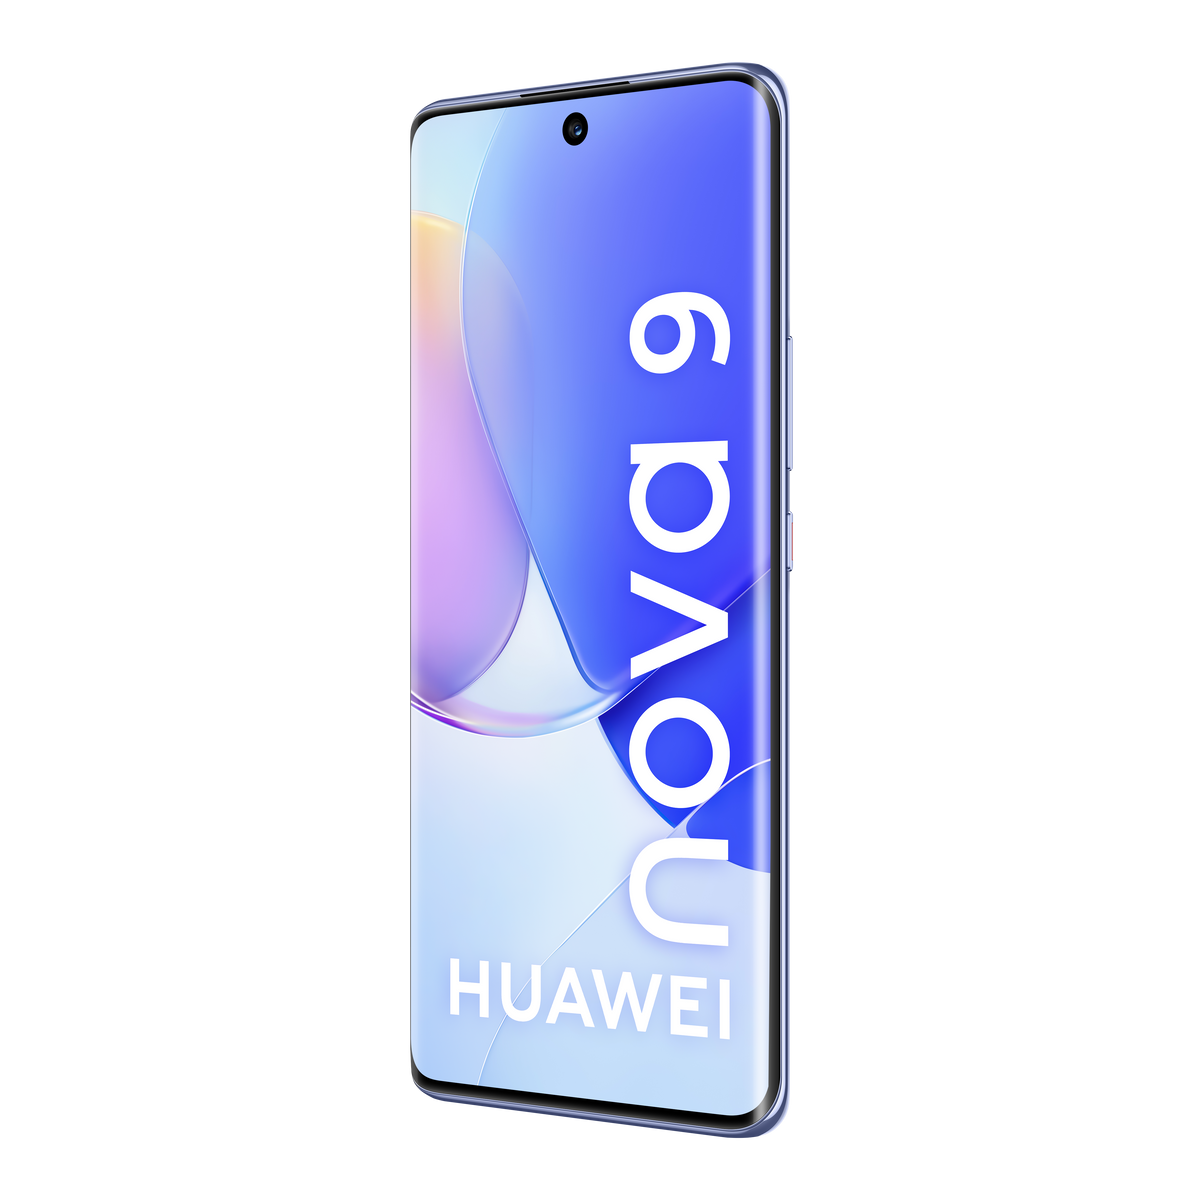 GB 128 Nova starry HUAWEI SIM Dual DS 9 128 Blau blue